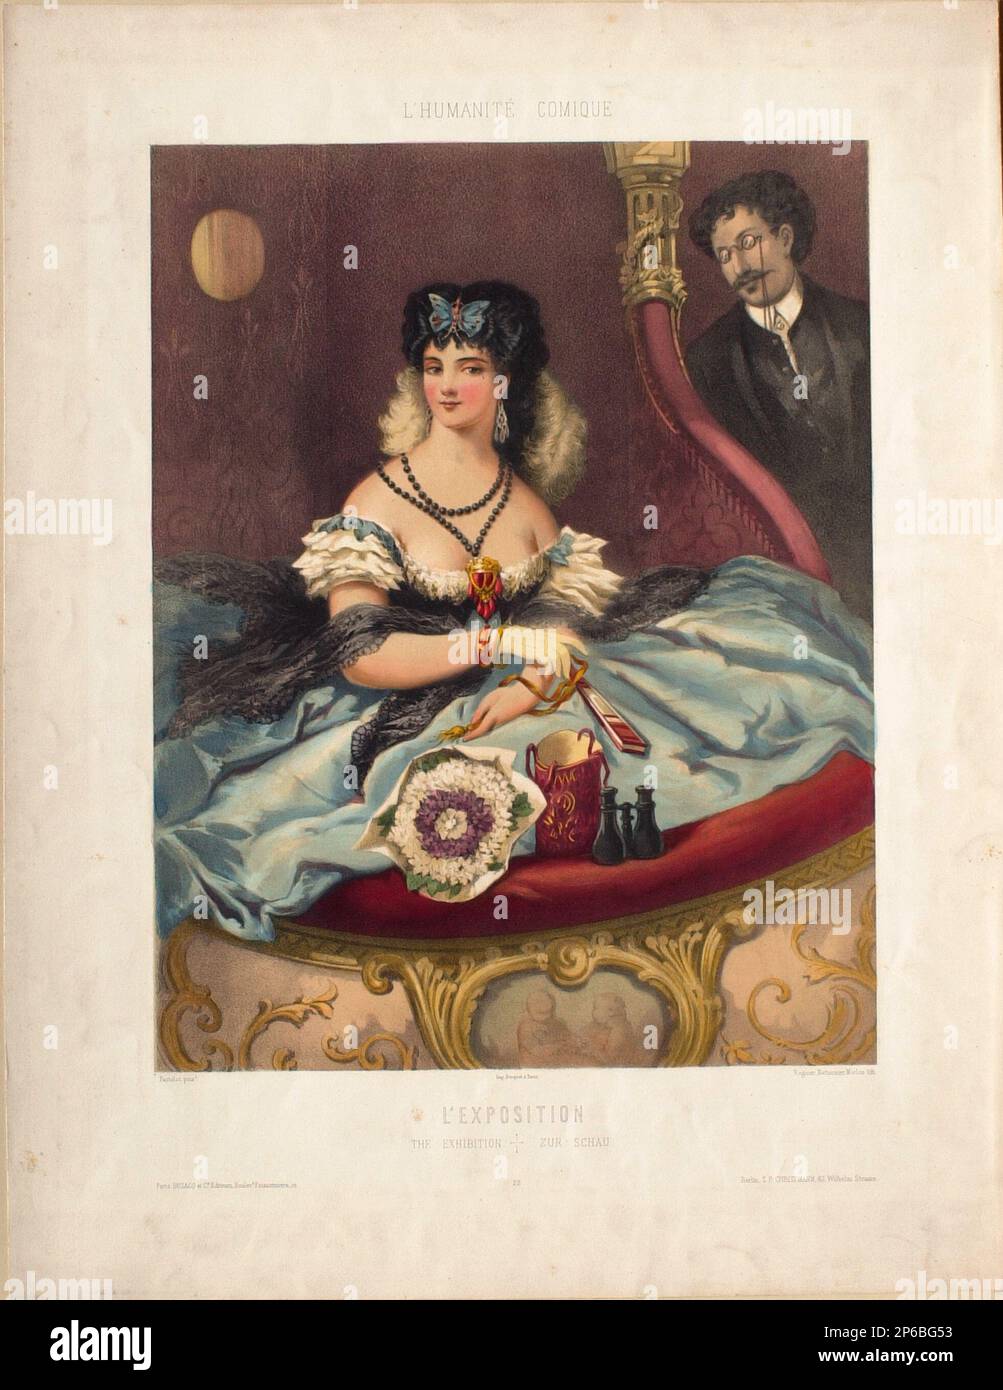 J. Bettannier, L'Humanité Comique: L'Exposition, 1840-1866, Chromolithograph auf Papier. Stockfoto